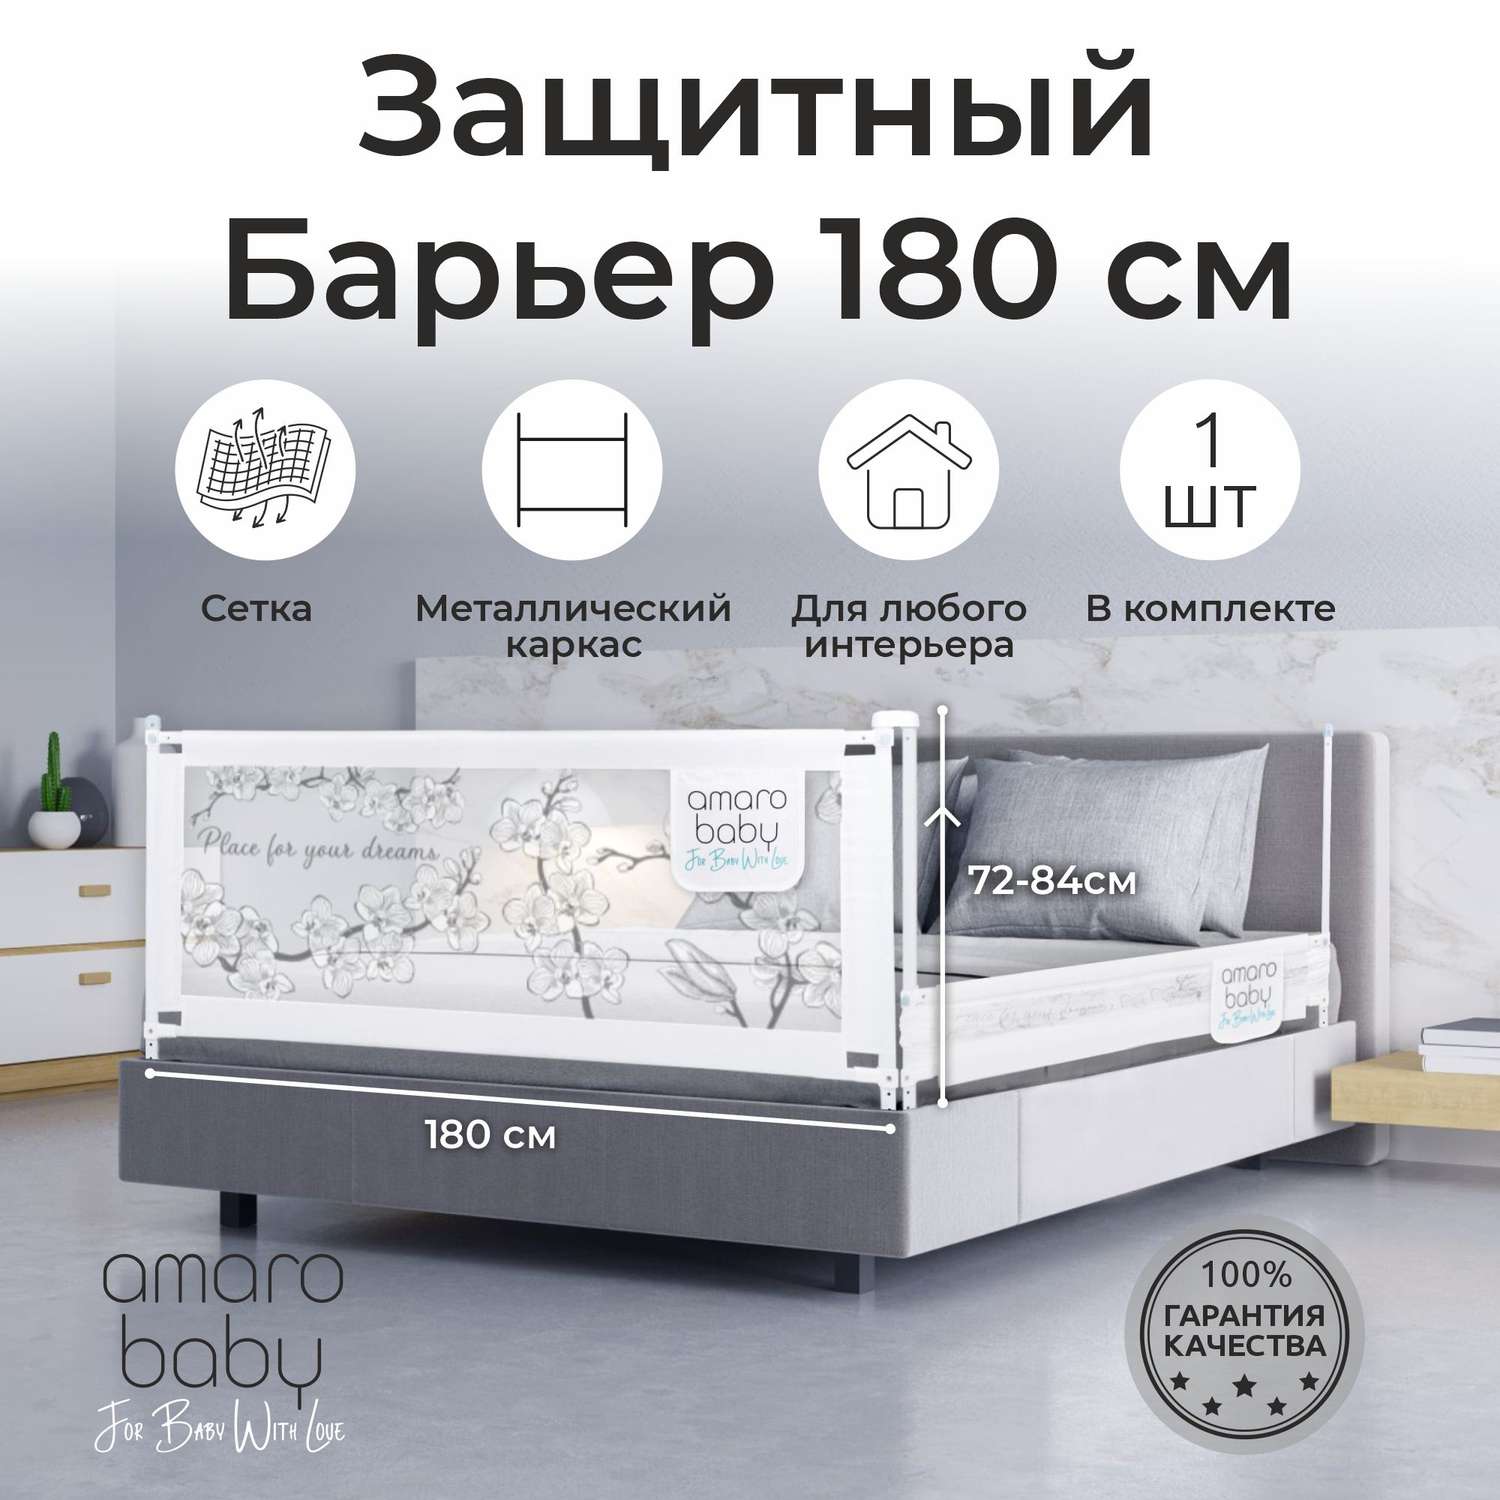 Барьер защитный для кровати AmaroBaby белый 180 см - фото 2